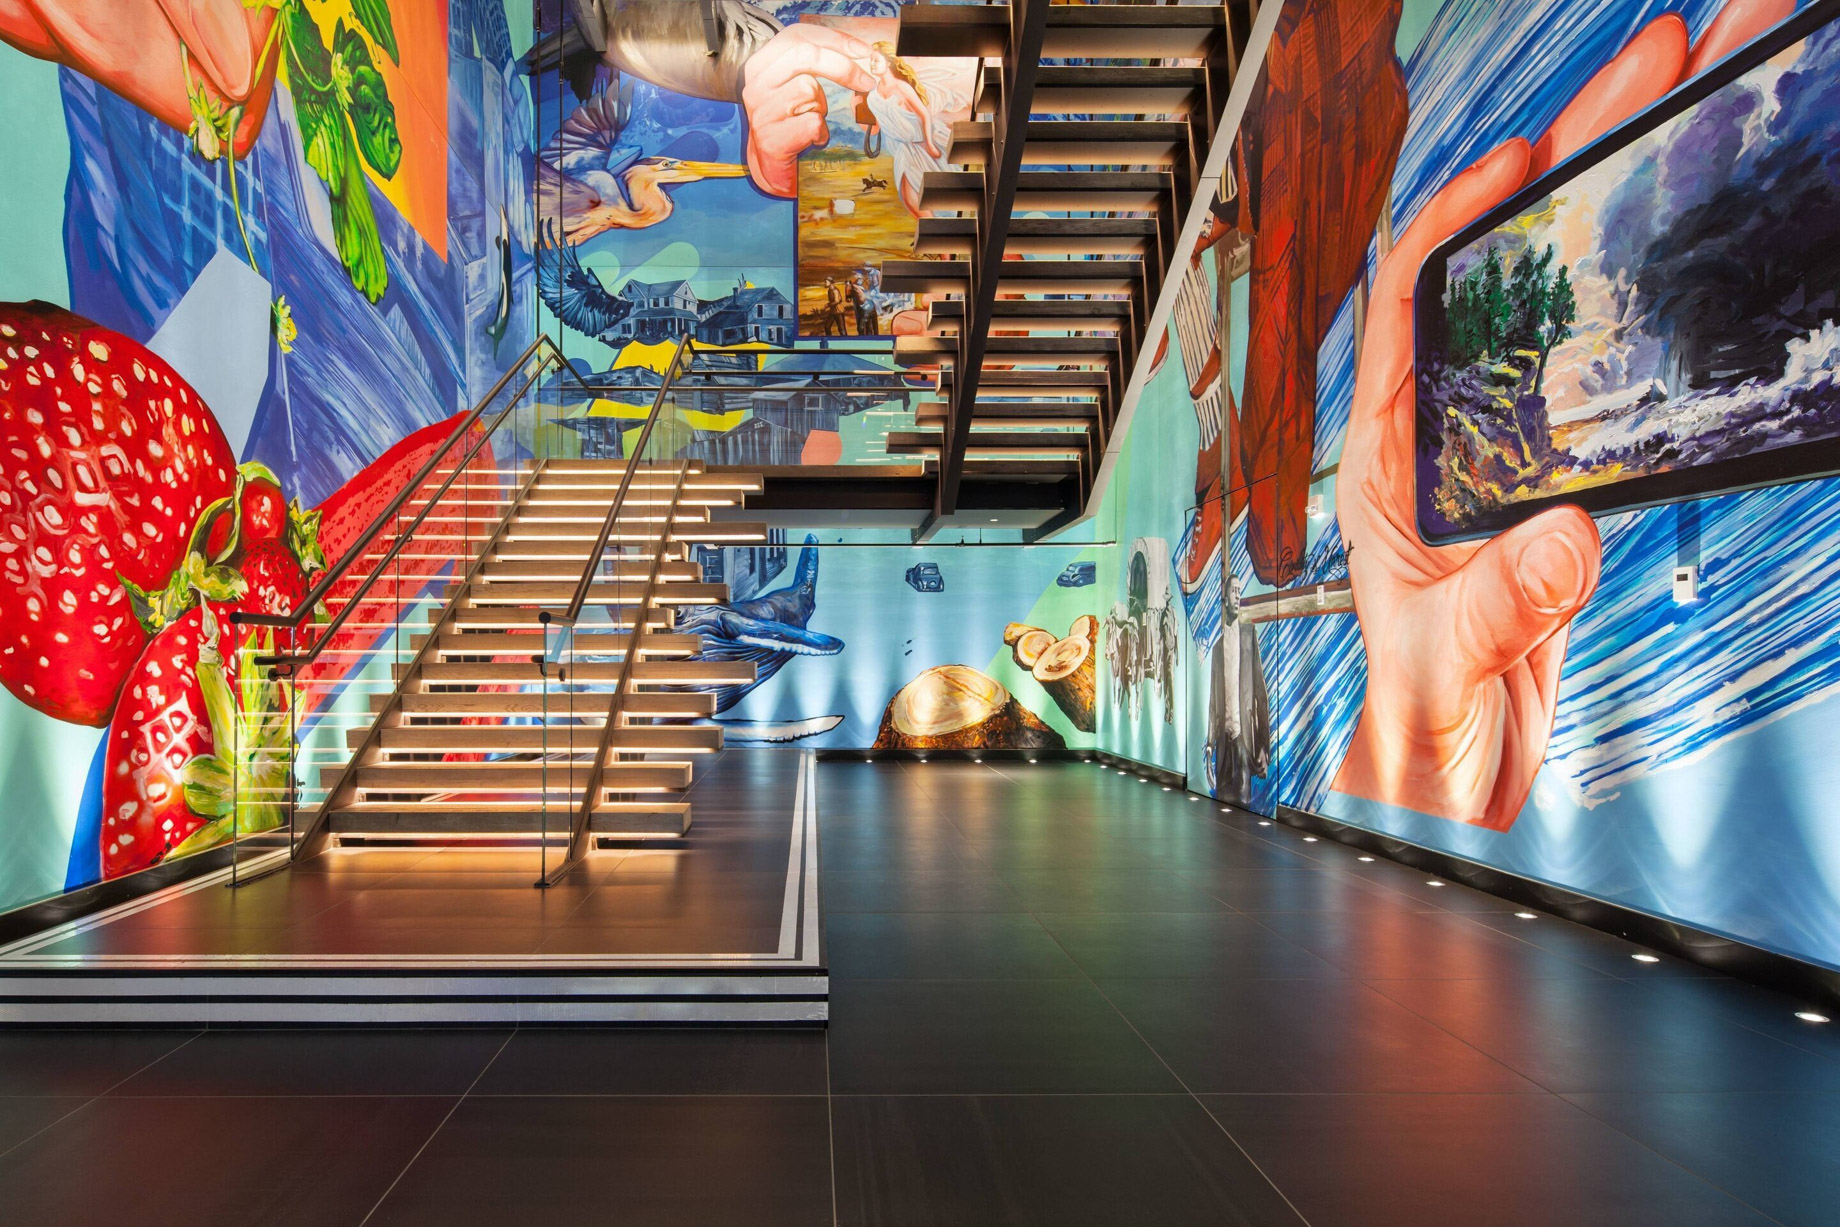 W Bellevue Hotel - Bellevue, WA, USA - Stairs Art Mural